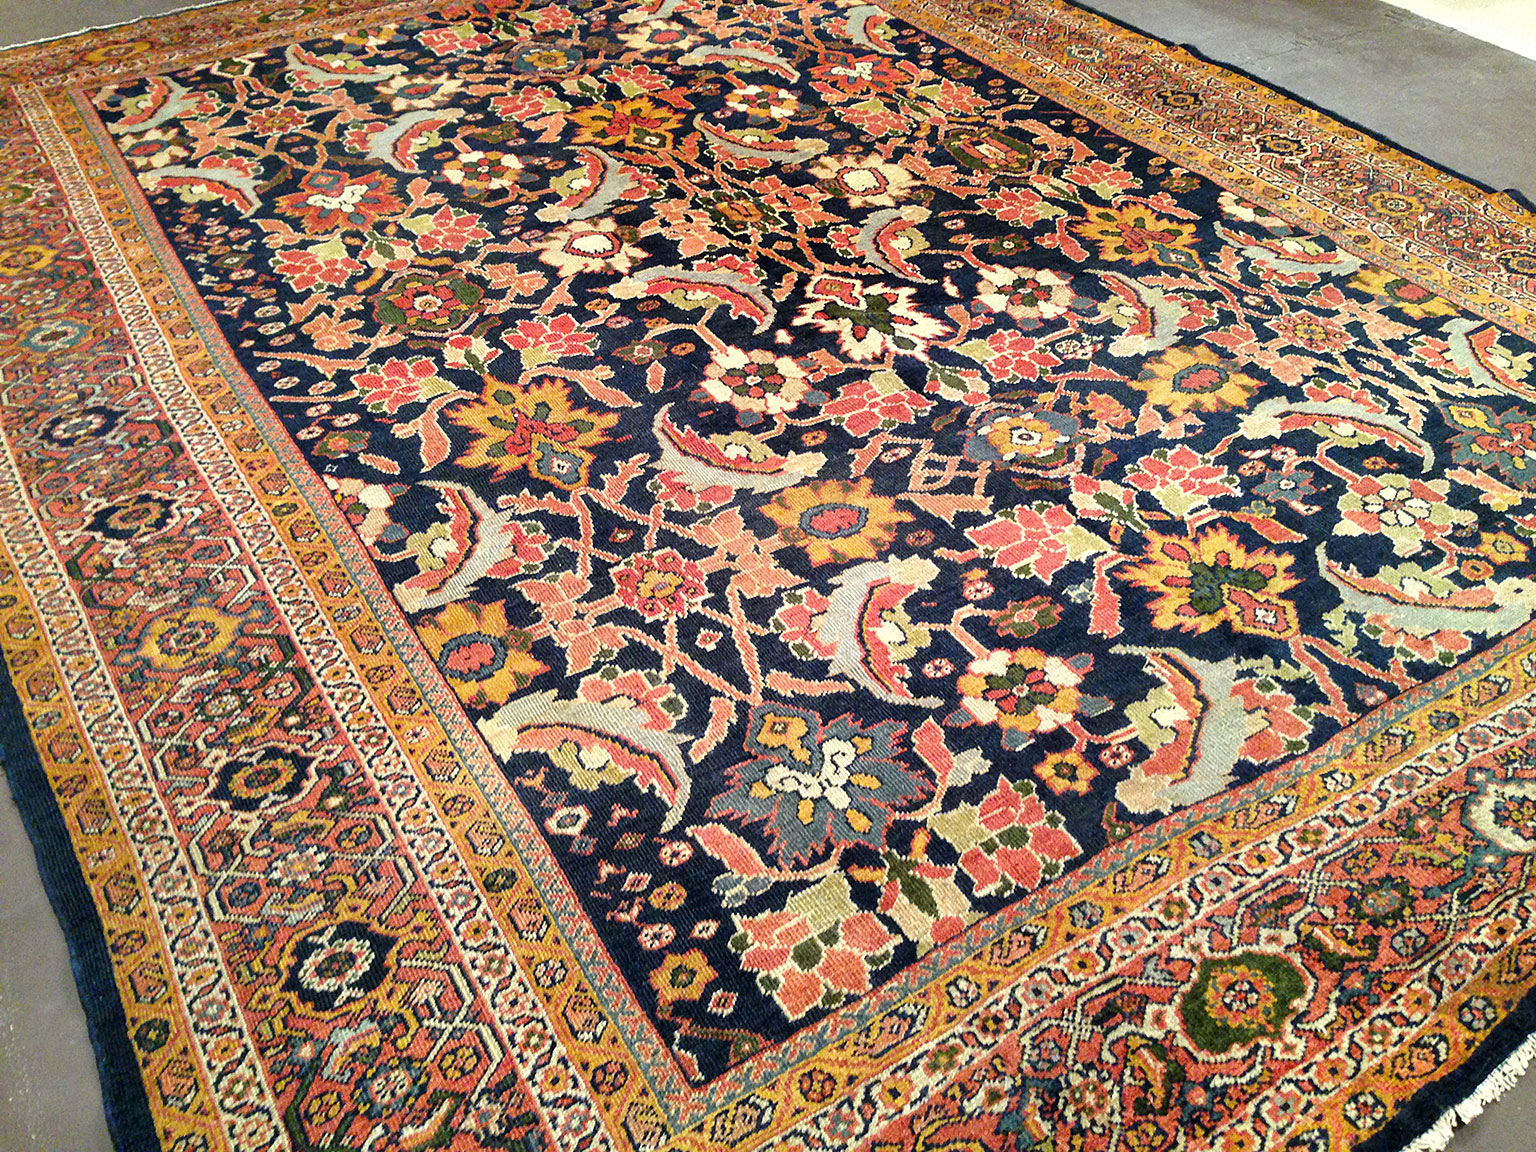 Antique sultan abad Carpet - # 50430